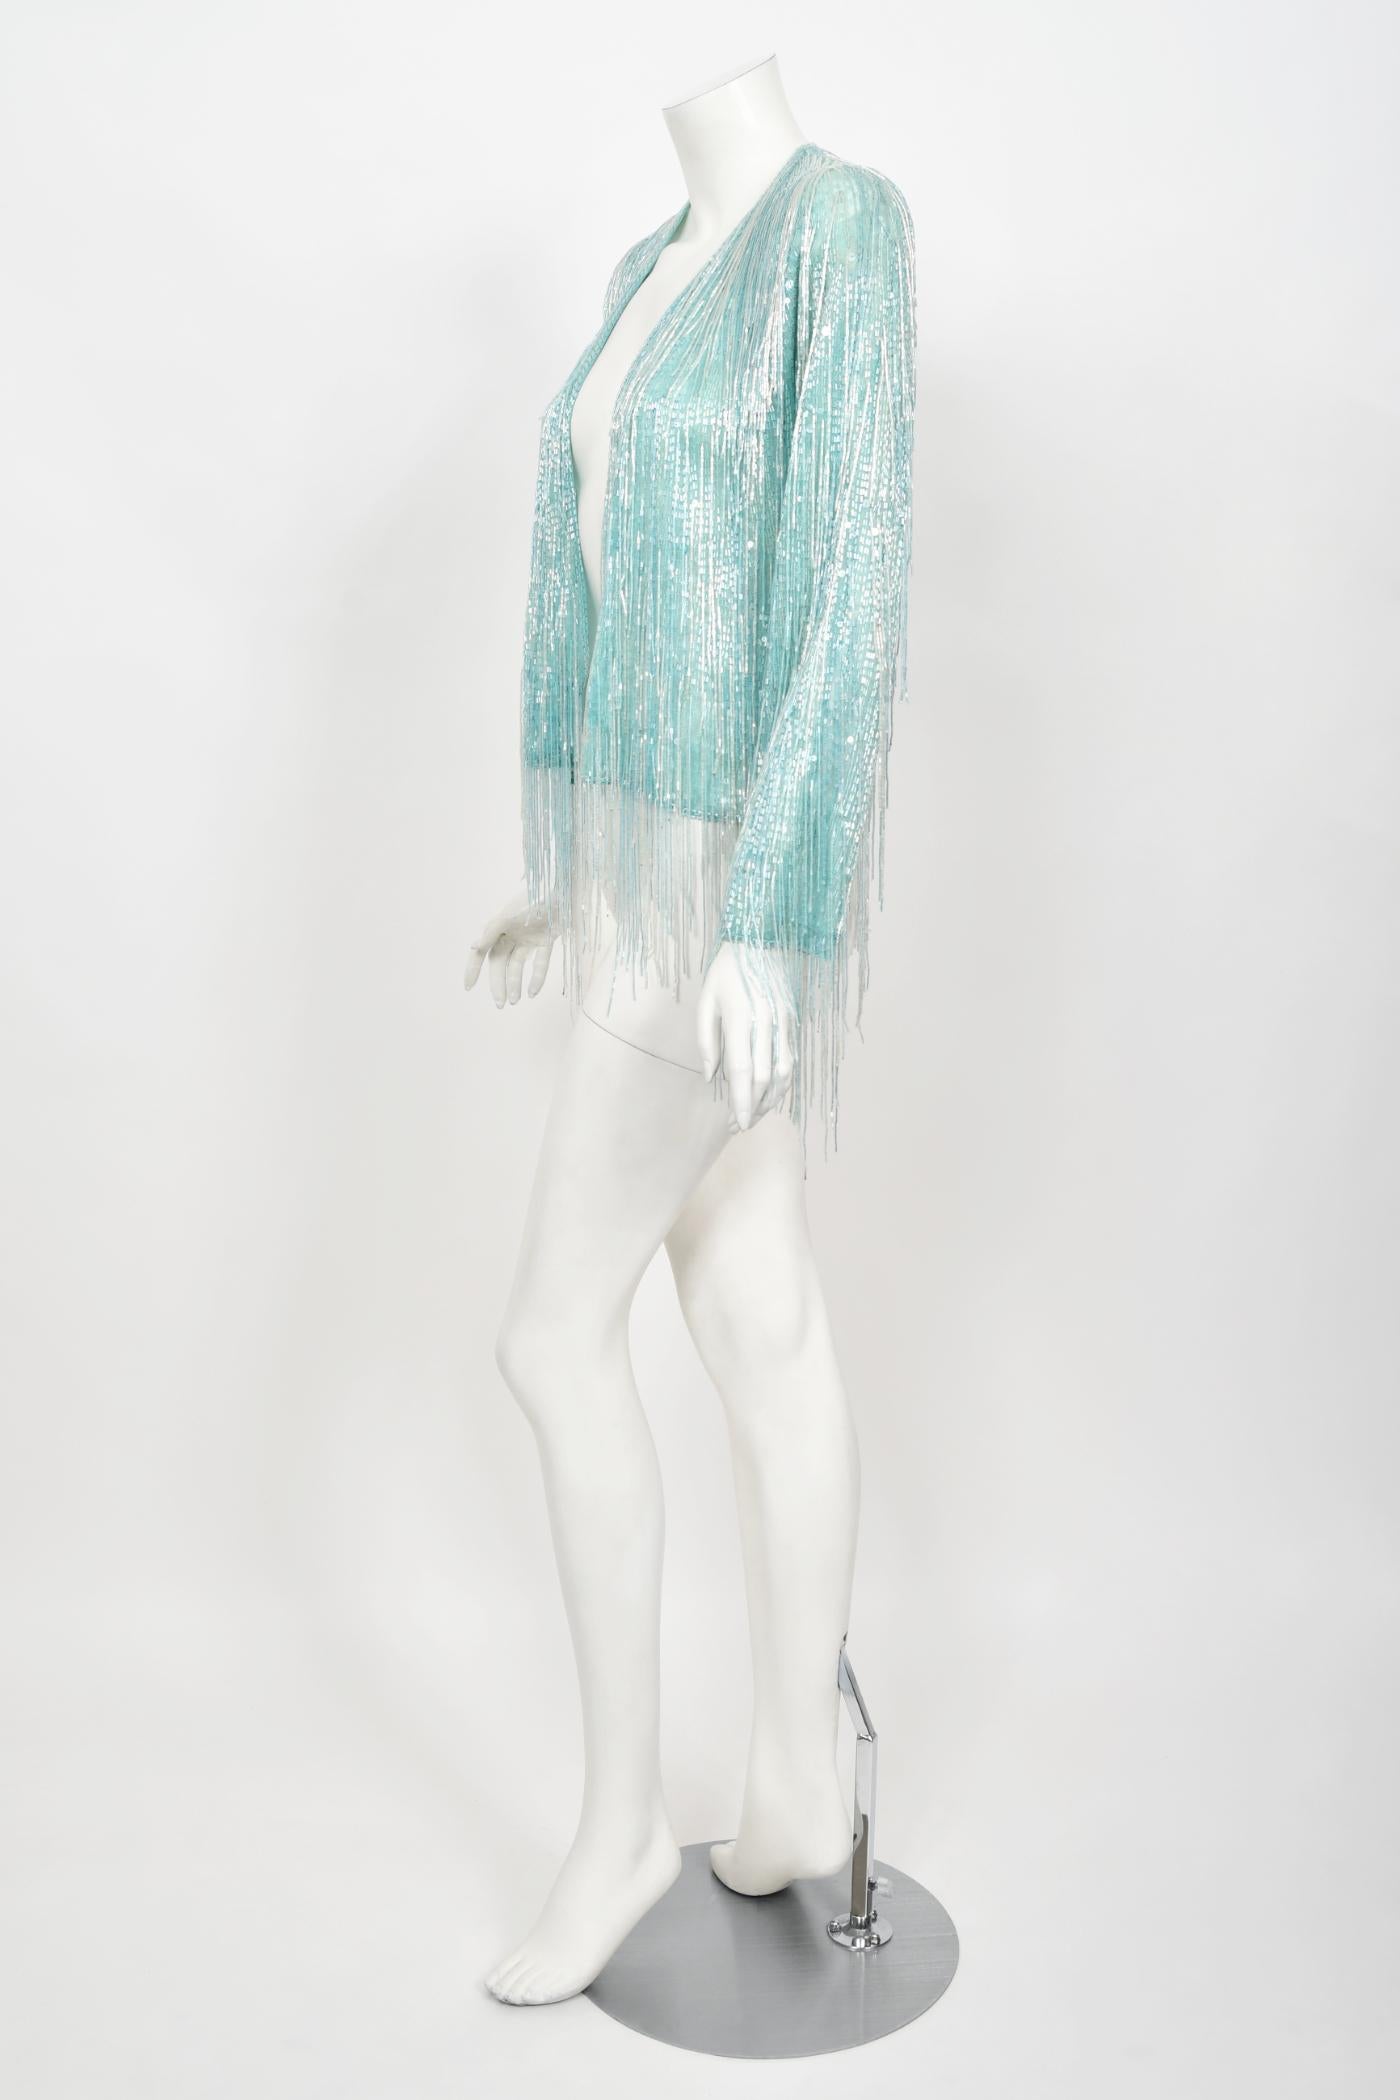 Halston Couture - Cardigan disco vintage à franges en soie perlée bleu glace, années 1970 3